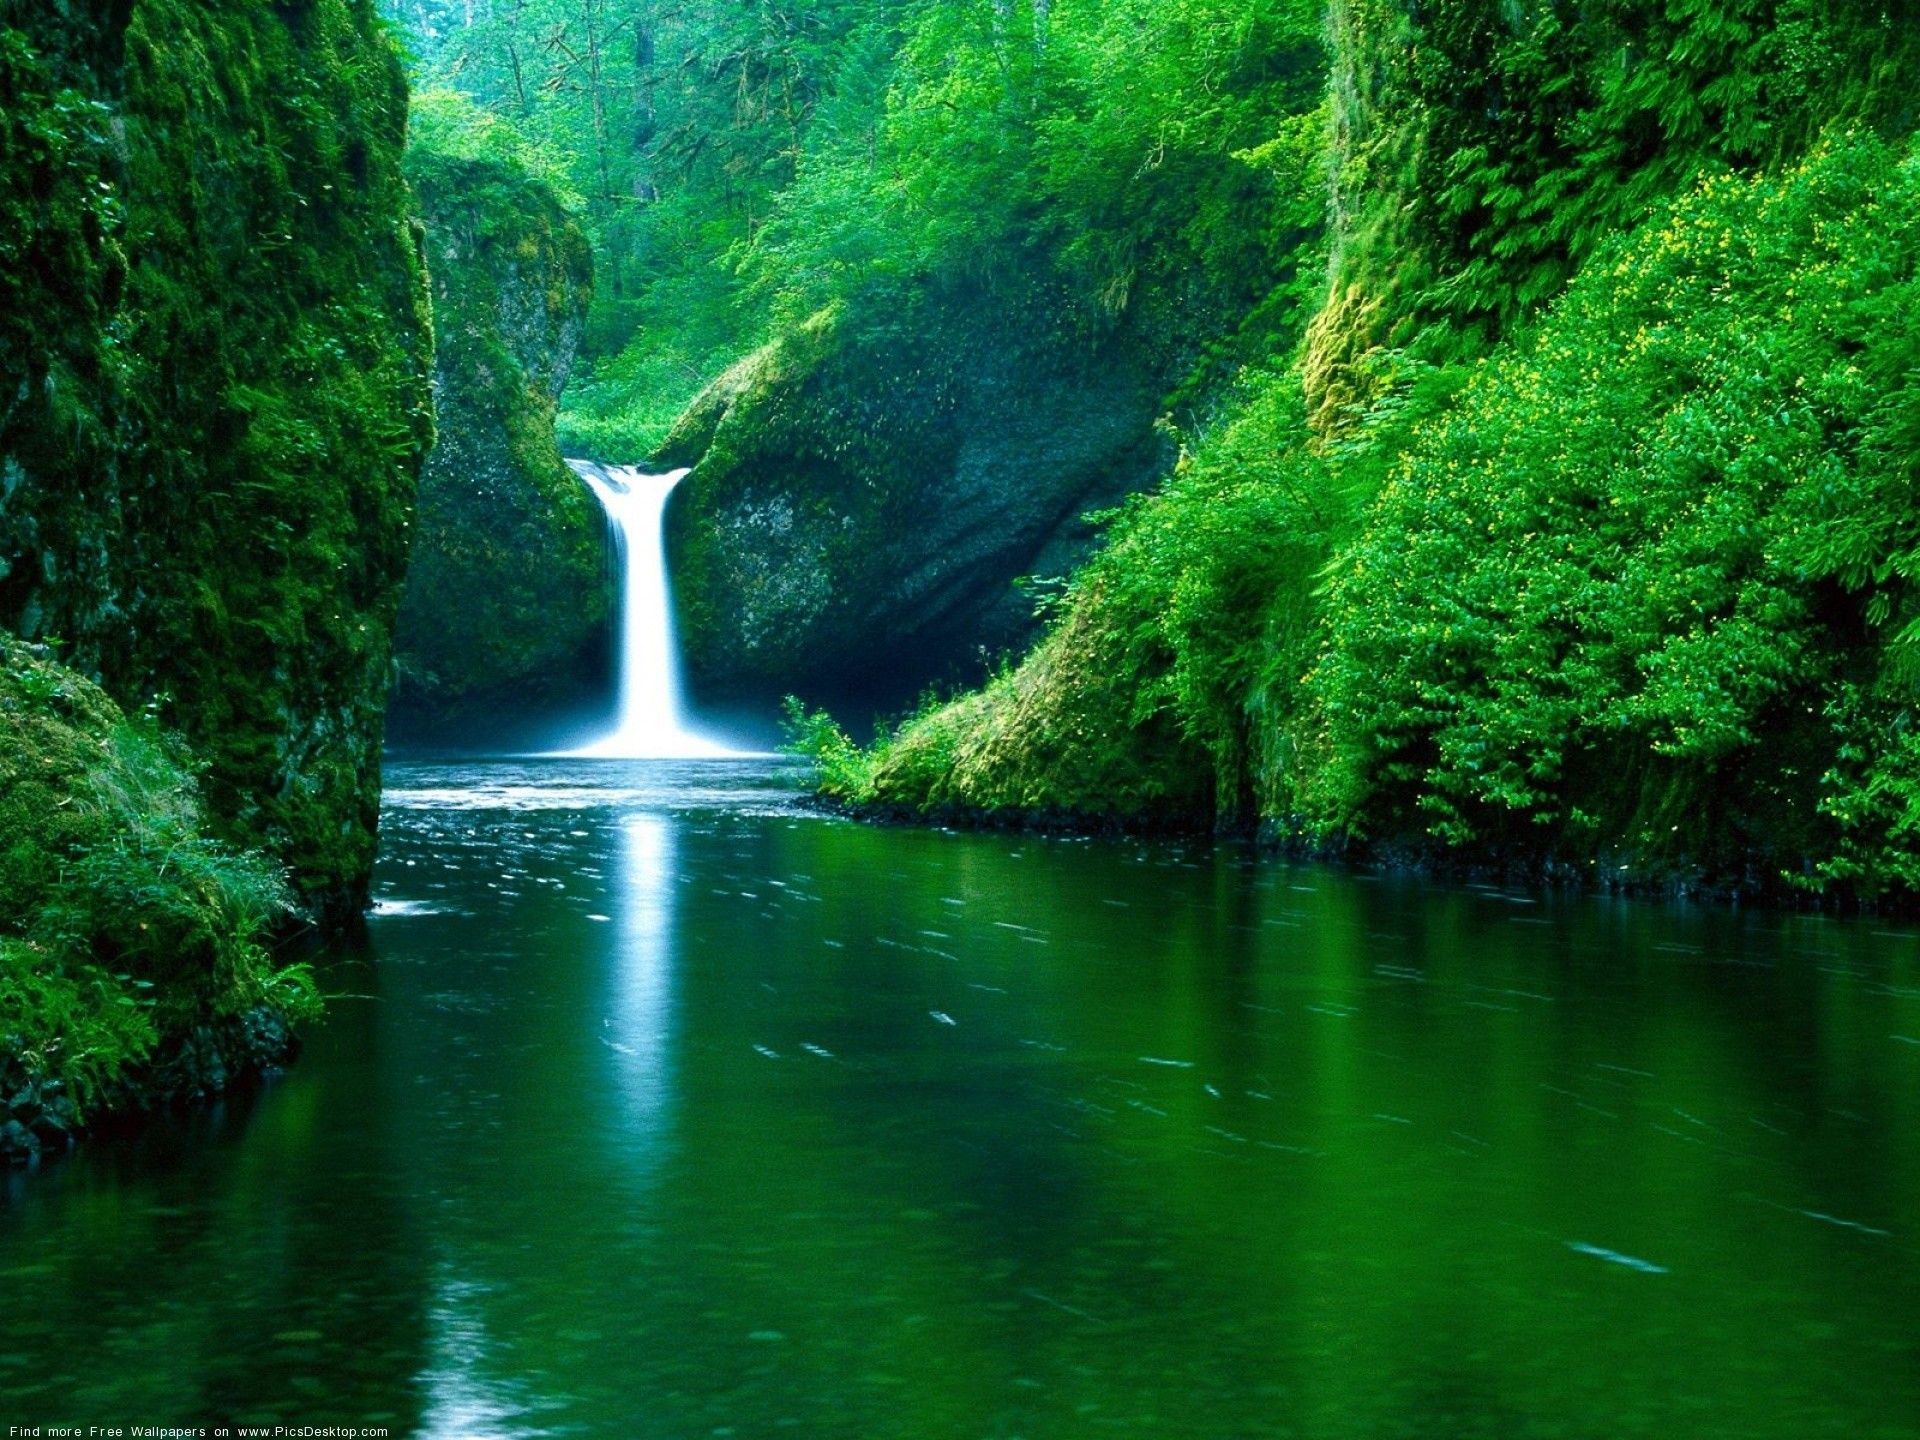 عکس پروفایل رویایی و دیدنی از آبشار مرتفع در دل جنگل سبز